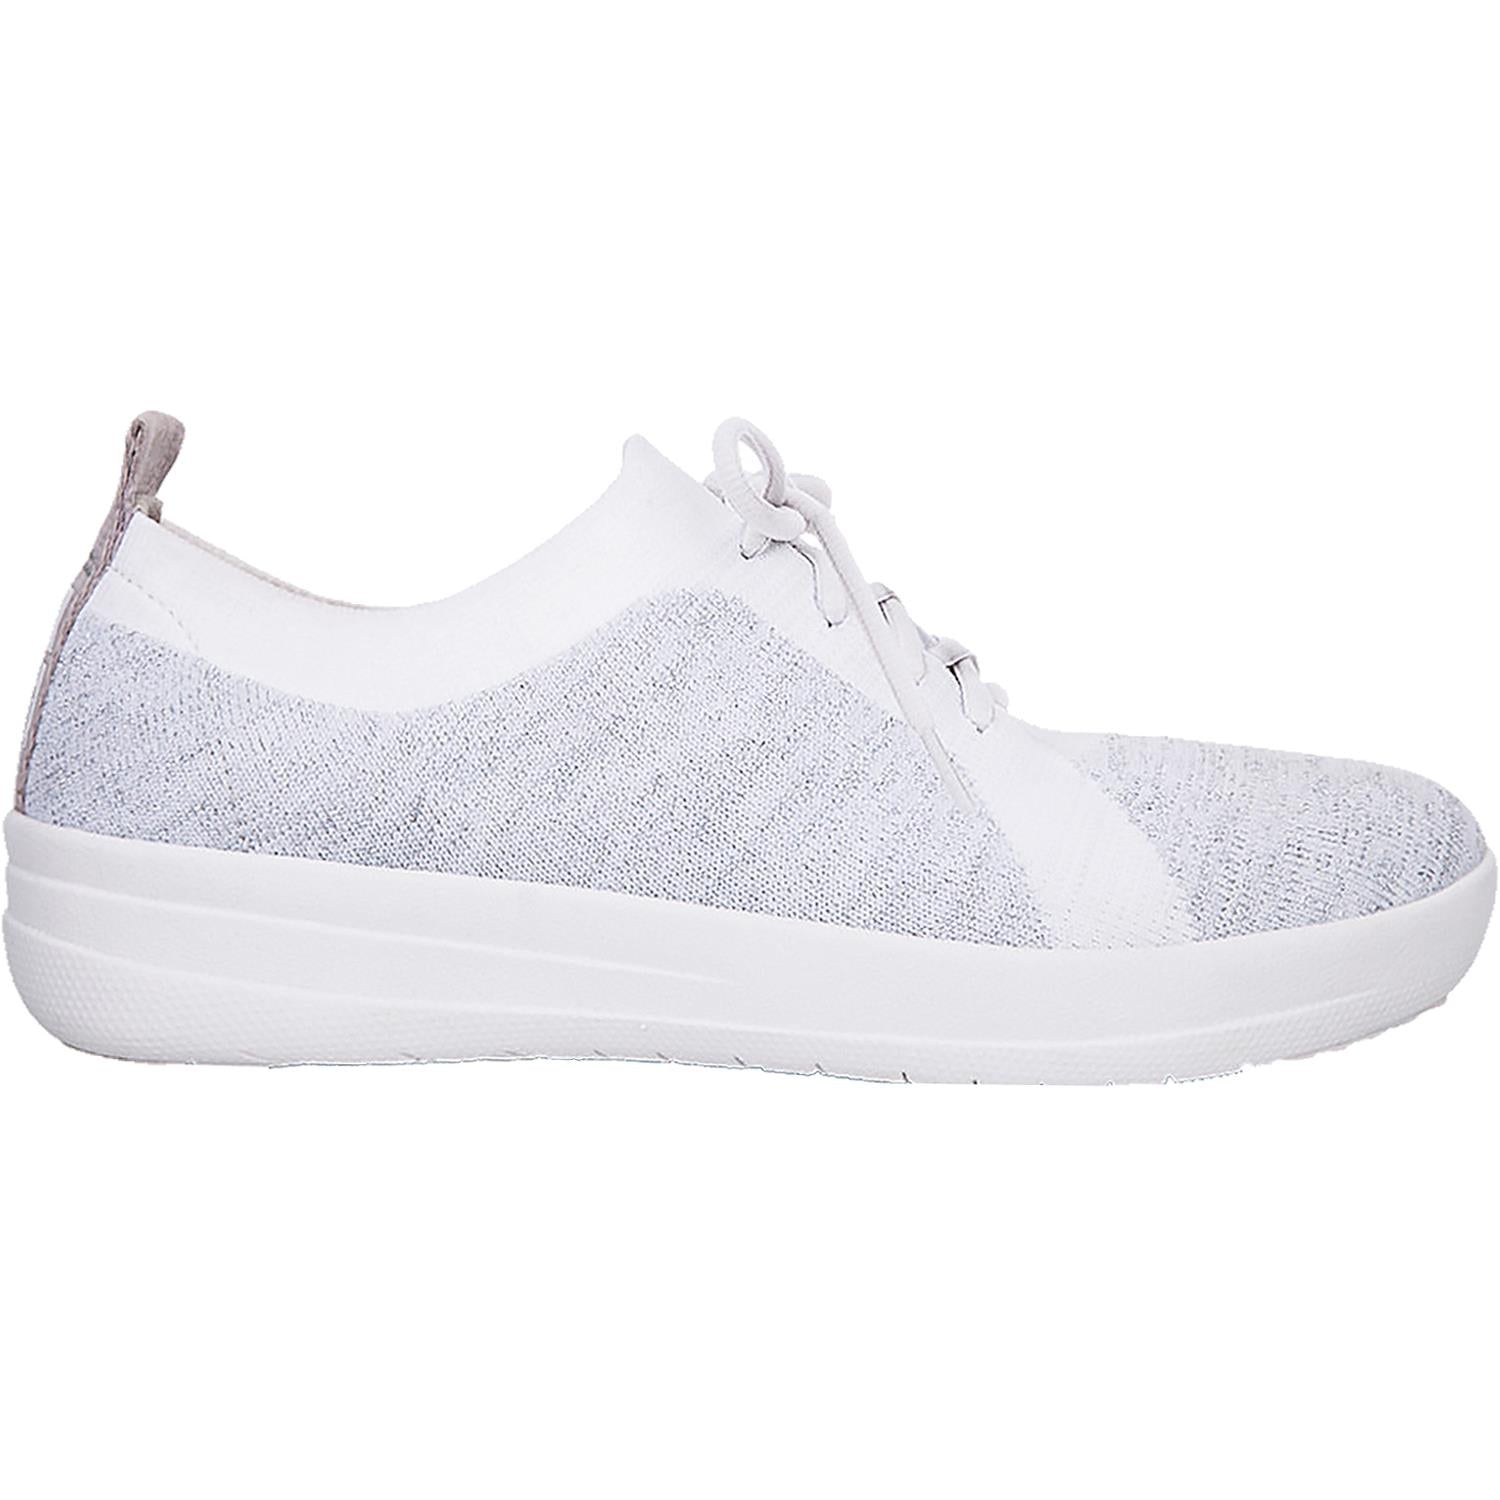 Women's Fit Flop F-Sporty Uberknit Sneakers White/Silver Metallic Nylo –  Footwear etc.